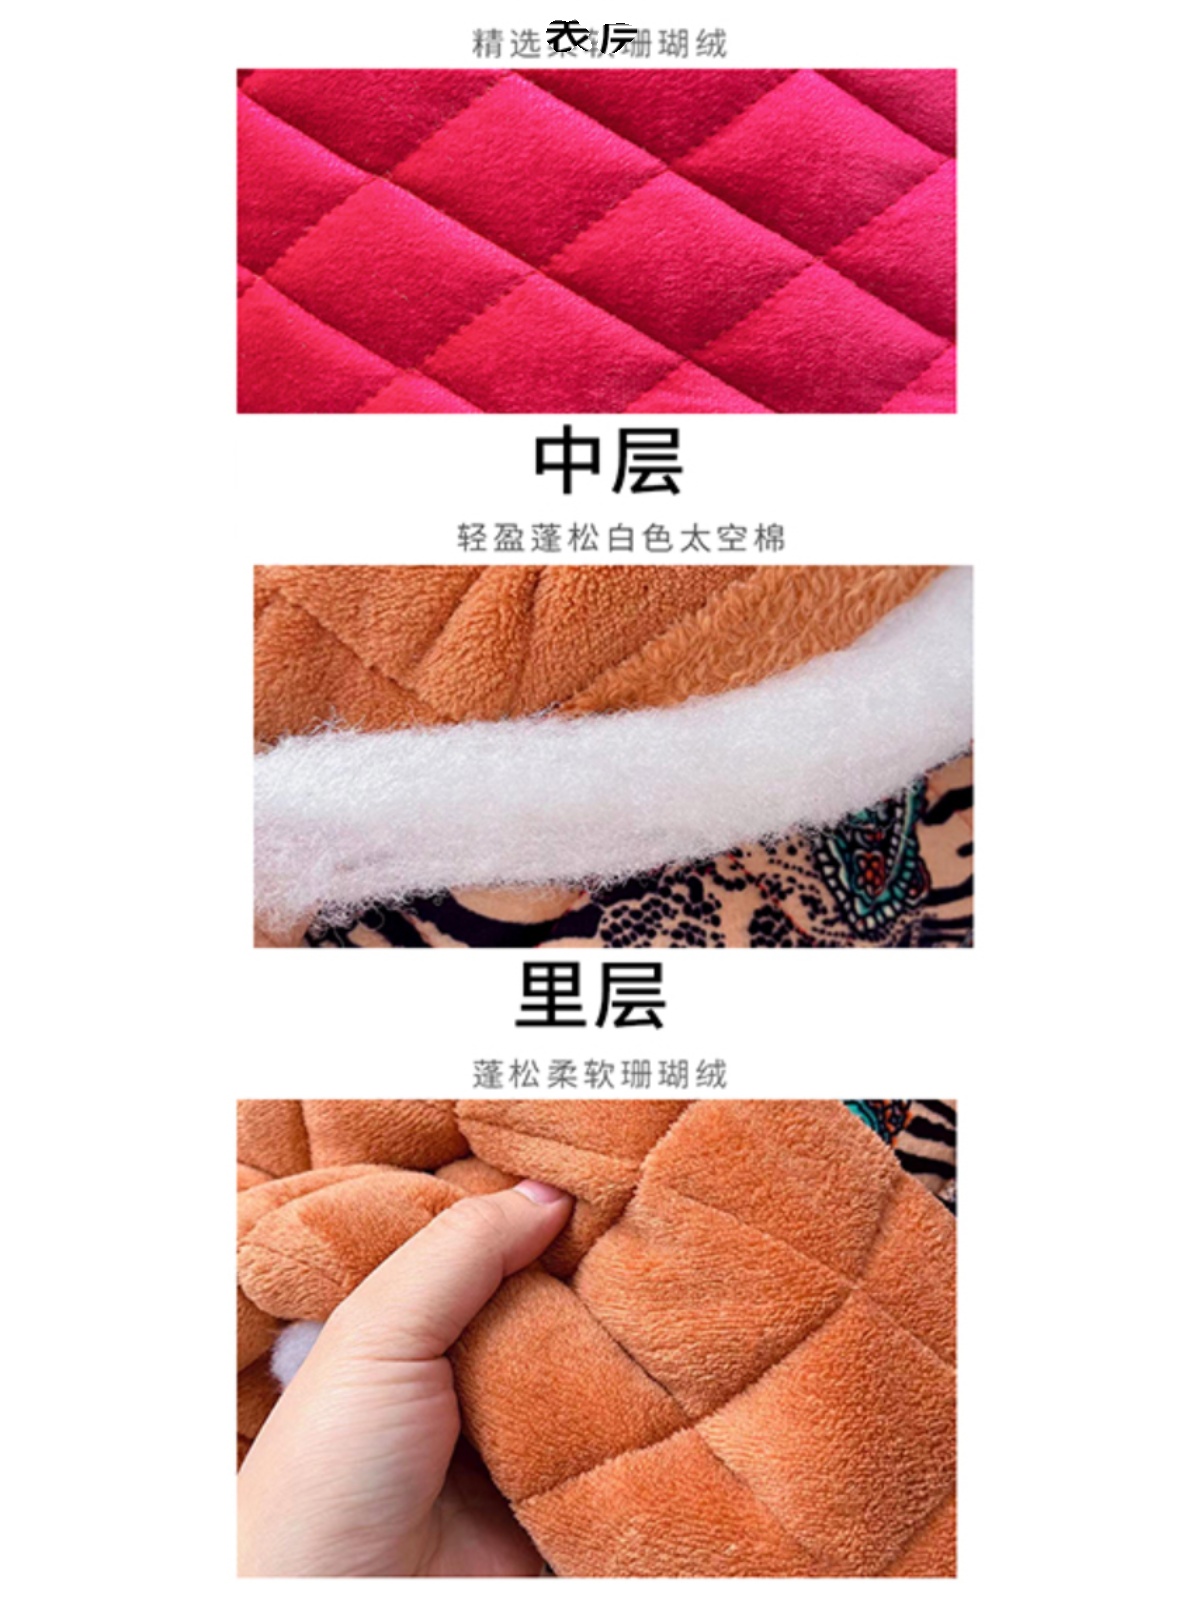 珊瑚绒布料三层夹棉面料卡通纯色冬季加厚保暖棉袄睡衣睡袍面料